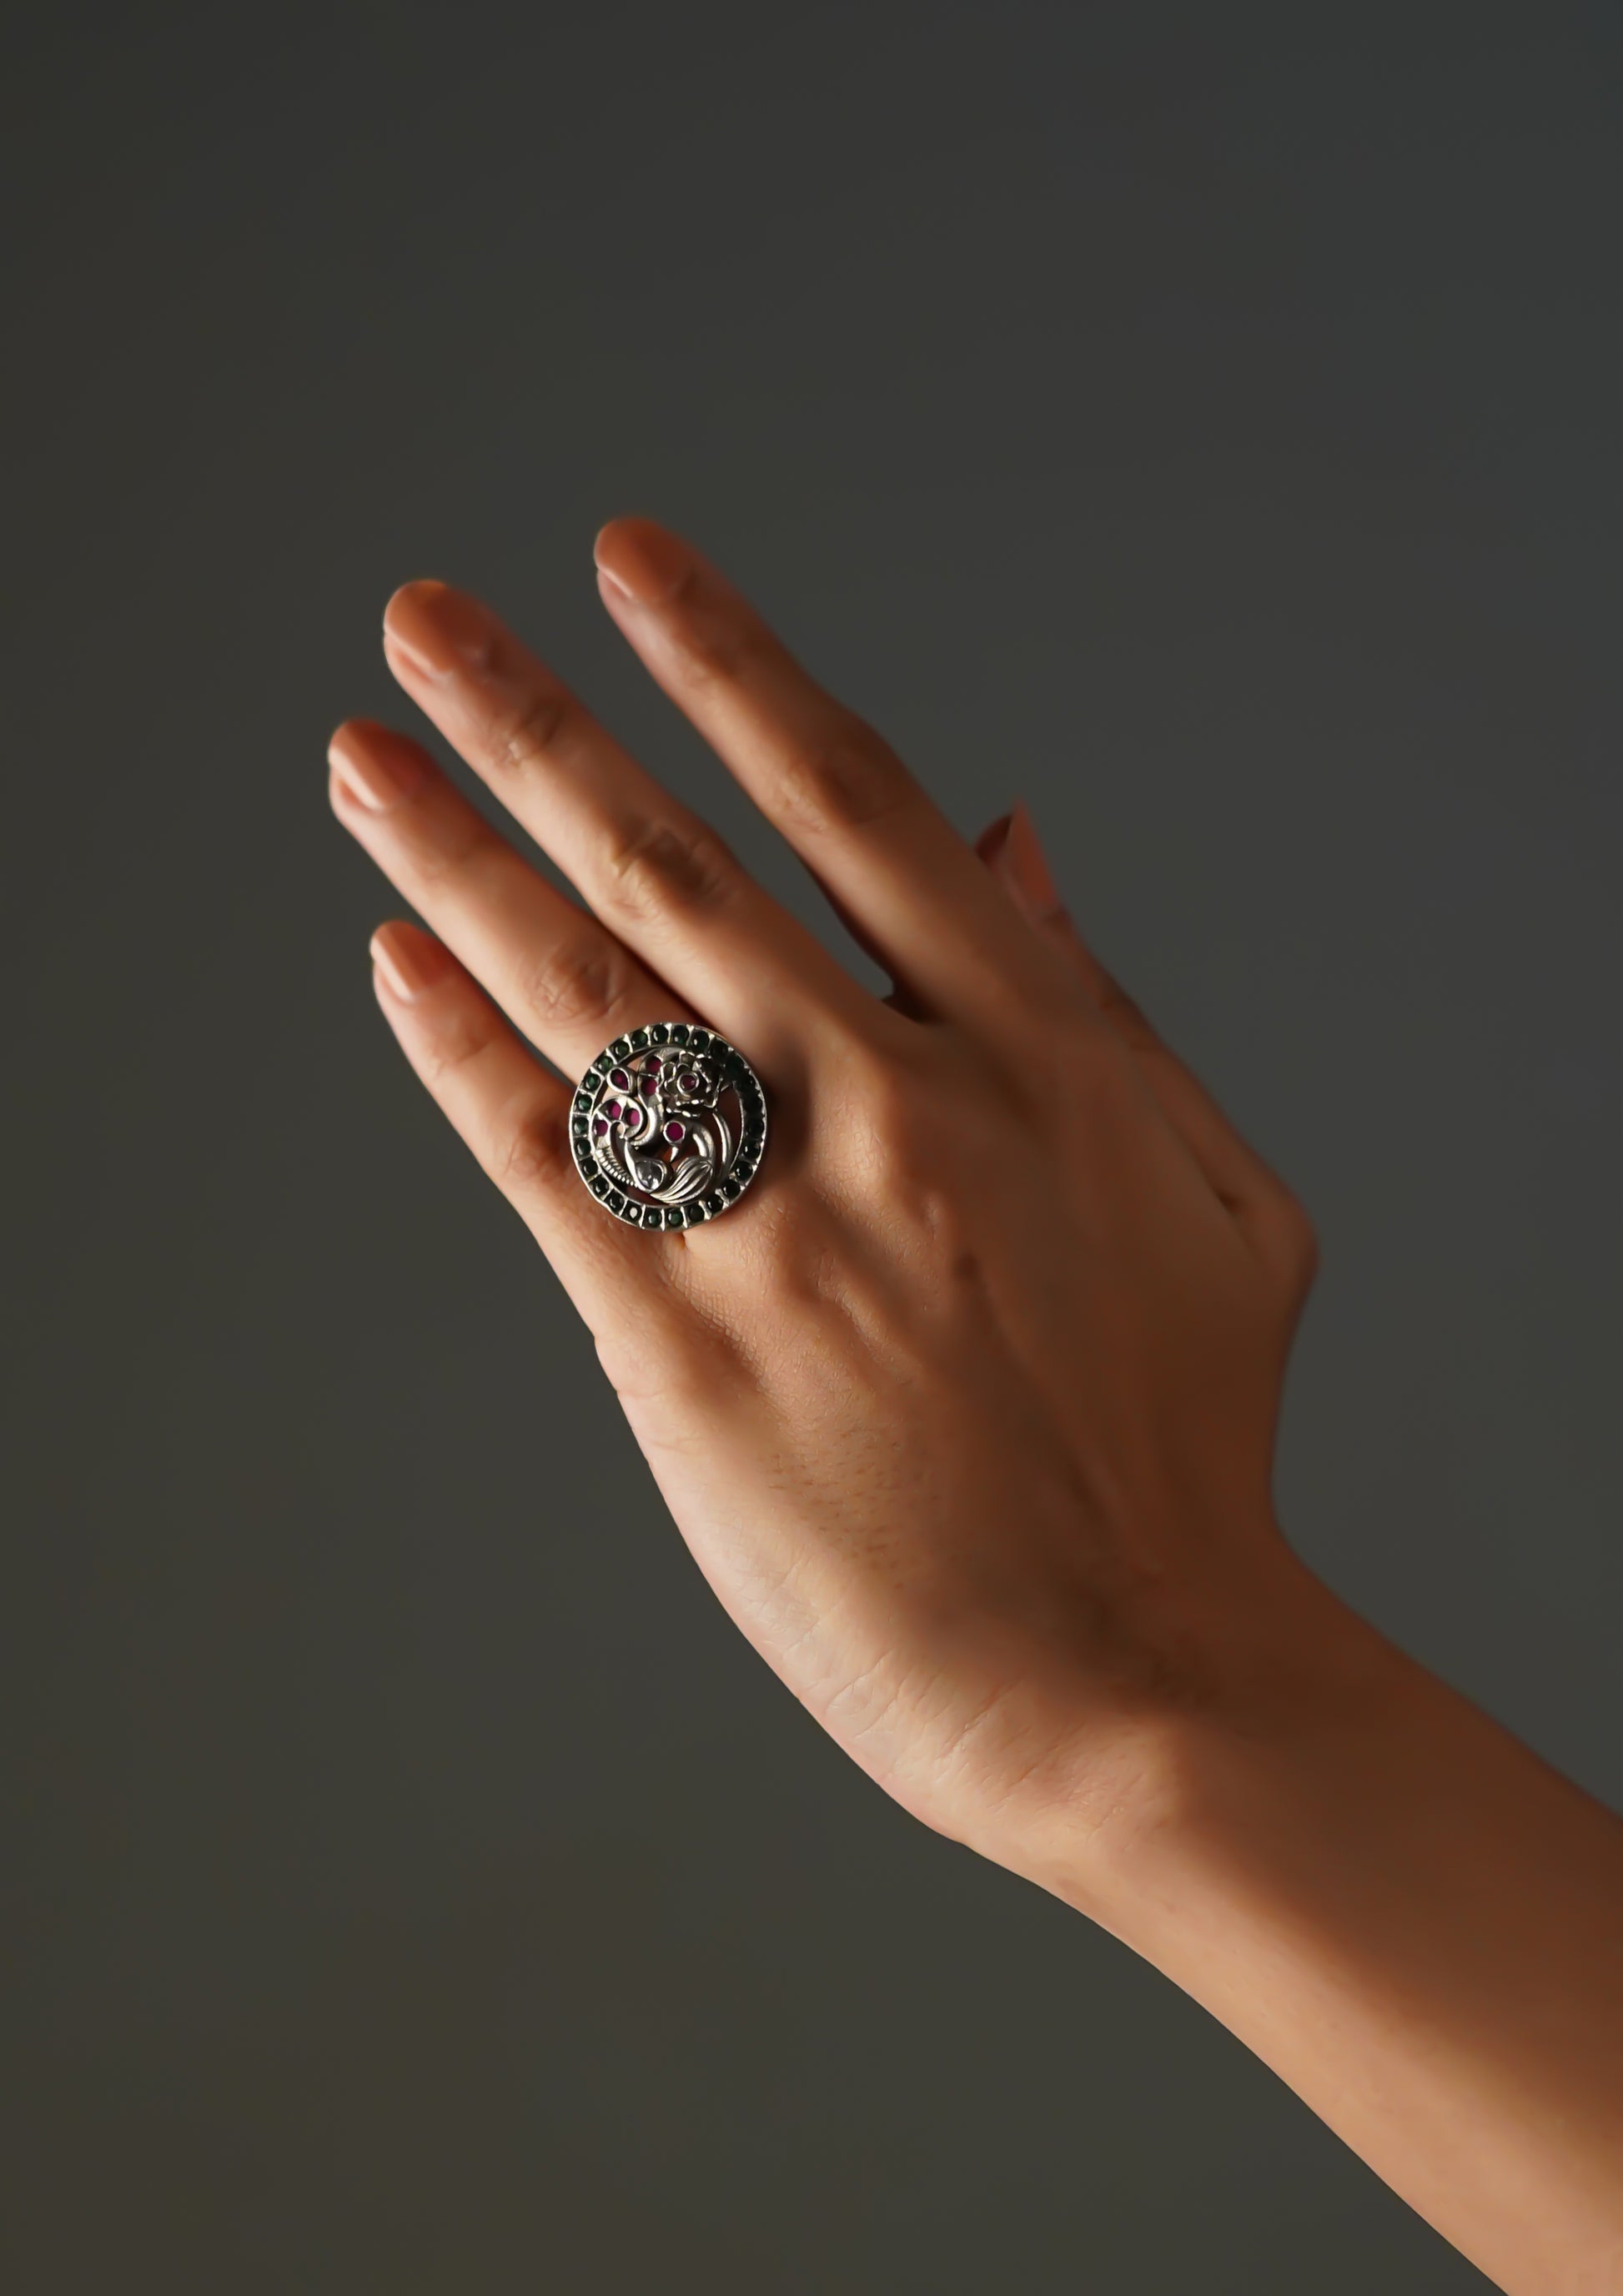 Shraddha Abhushana Premium Oxidized Silver Finish Ring with Stonework